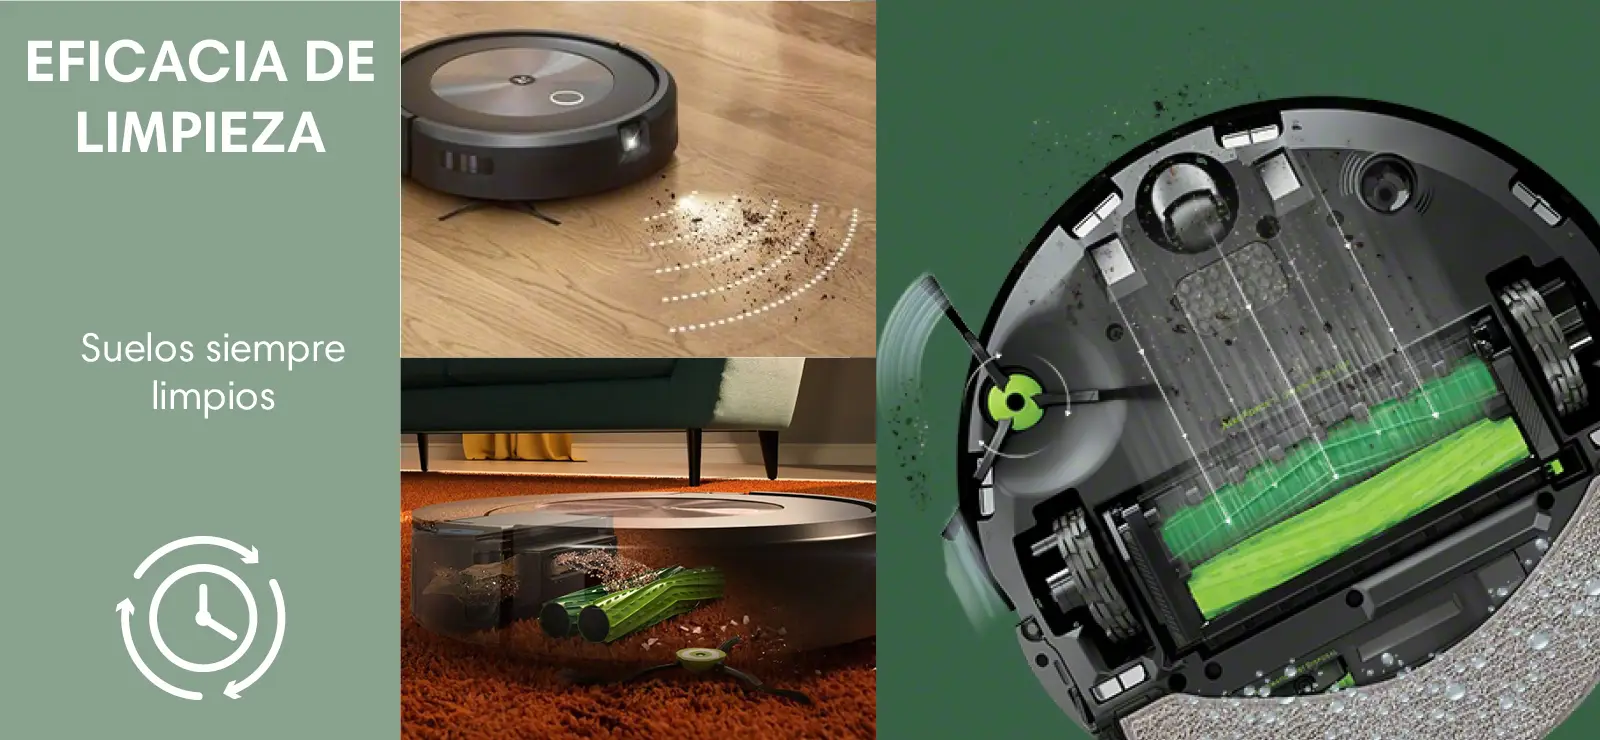 Robot aspirador Roomba® i5 Plus con conexión Wi-Fi, vaciado